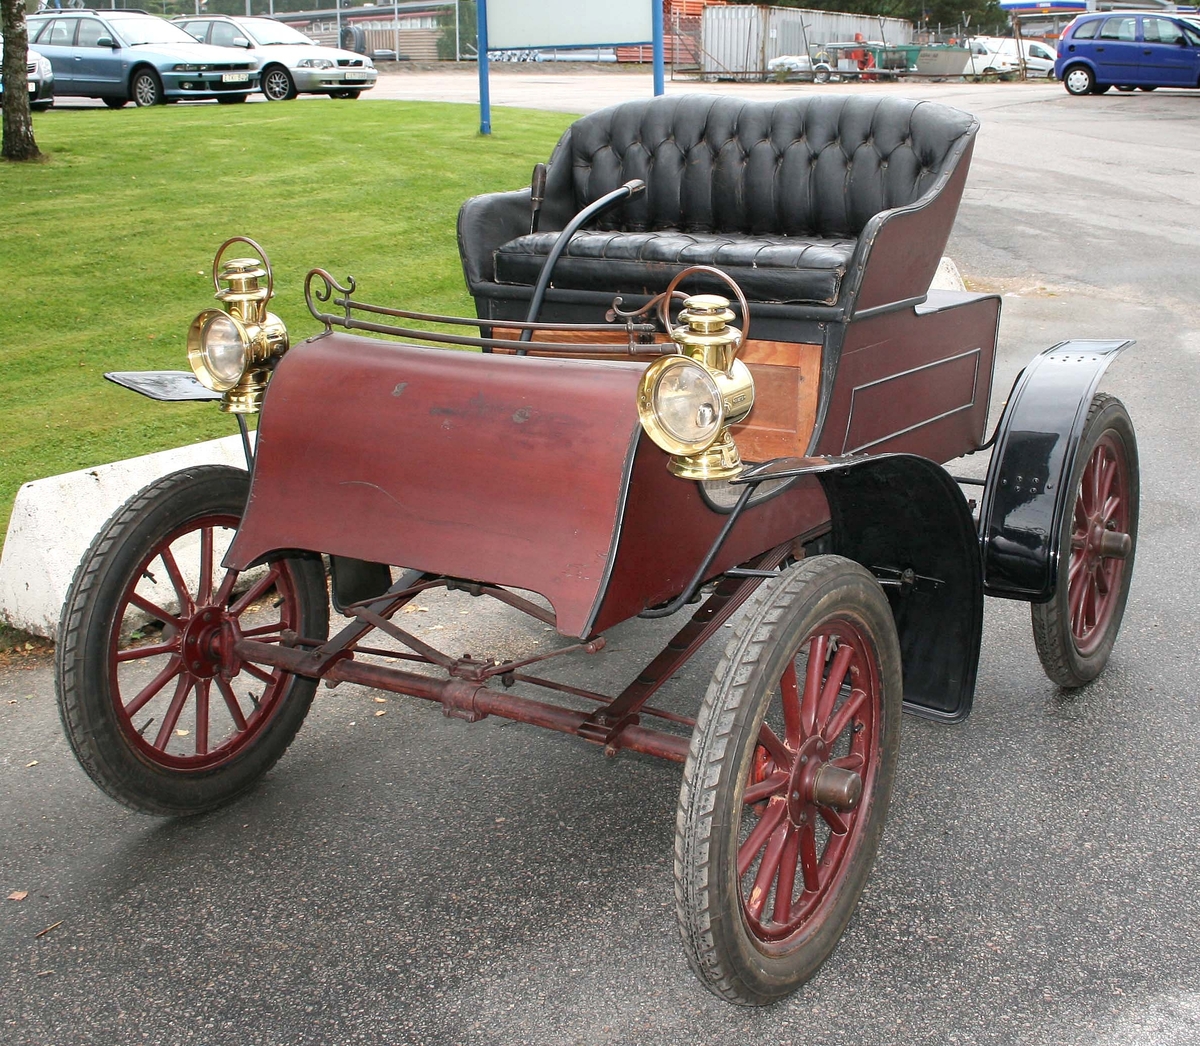 Bilen är en Northern 1906 års modell, har 2-sitsigt säte, encylindrig motor på 5 hk som gör 500 varv per minut vid topphastigheten 30-35 km/h. Har en centralt placerad kedja som driver bakaxeln, samt 2 växlar framåt samt backväxel. Bilens pris var 3.375 kr, år 1905. 

Kördes senast vid Barnens Dag-firandet i Borås 1938. Se även artikel i Borås Tidning, 2005-05-04.